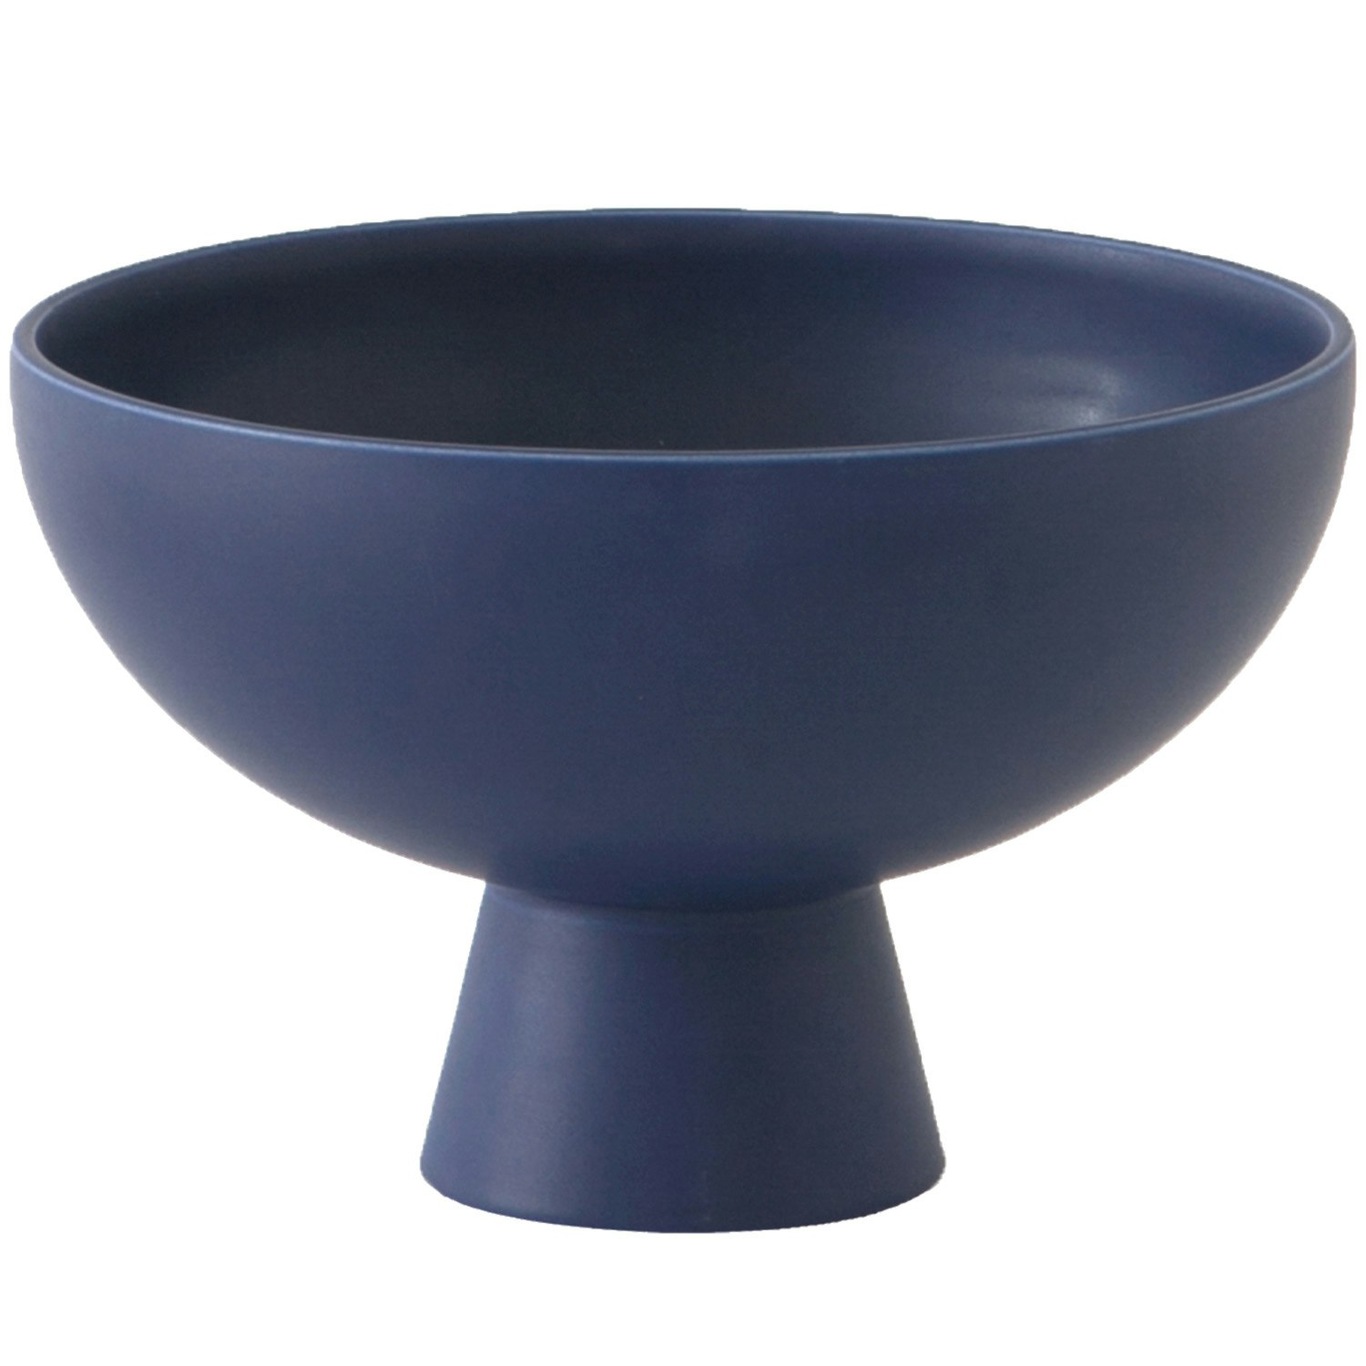 Strøm Bowl With Foot Ø15 cm, Blue